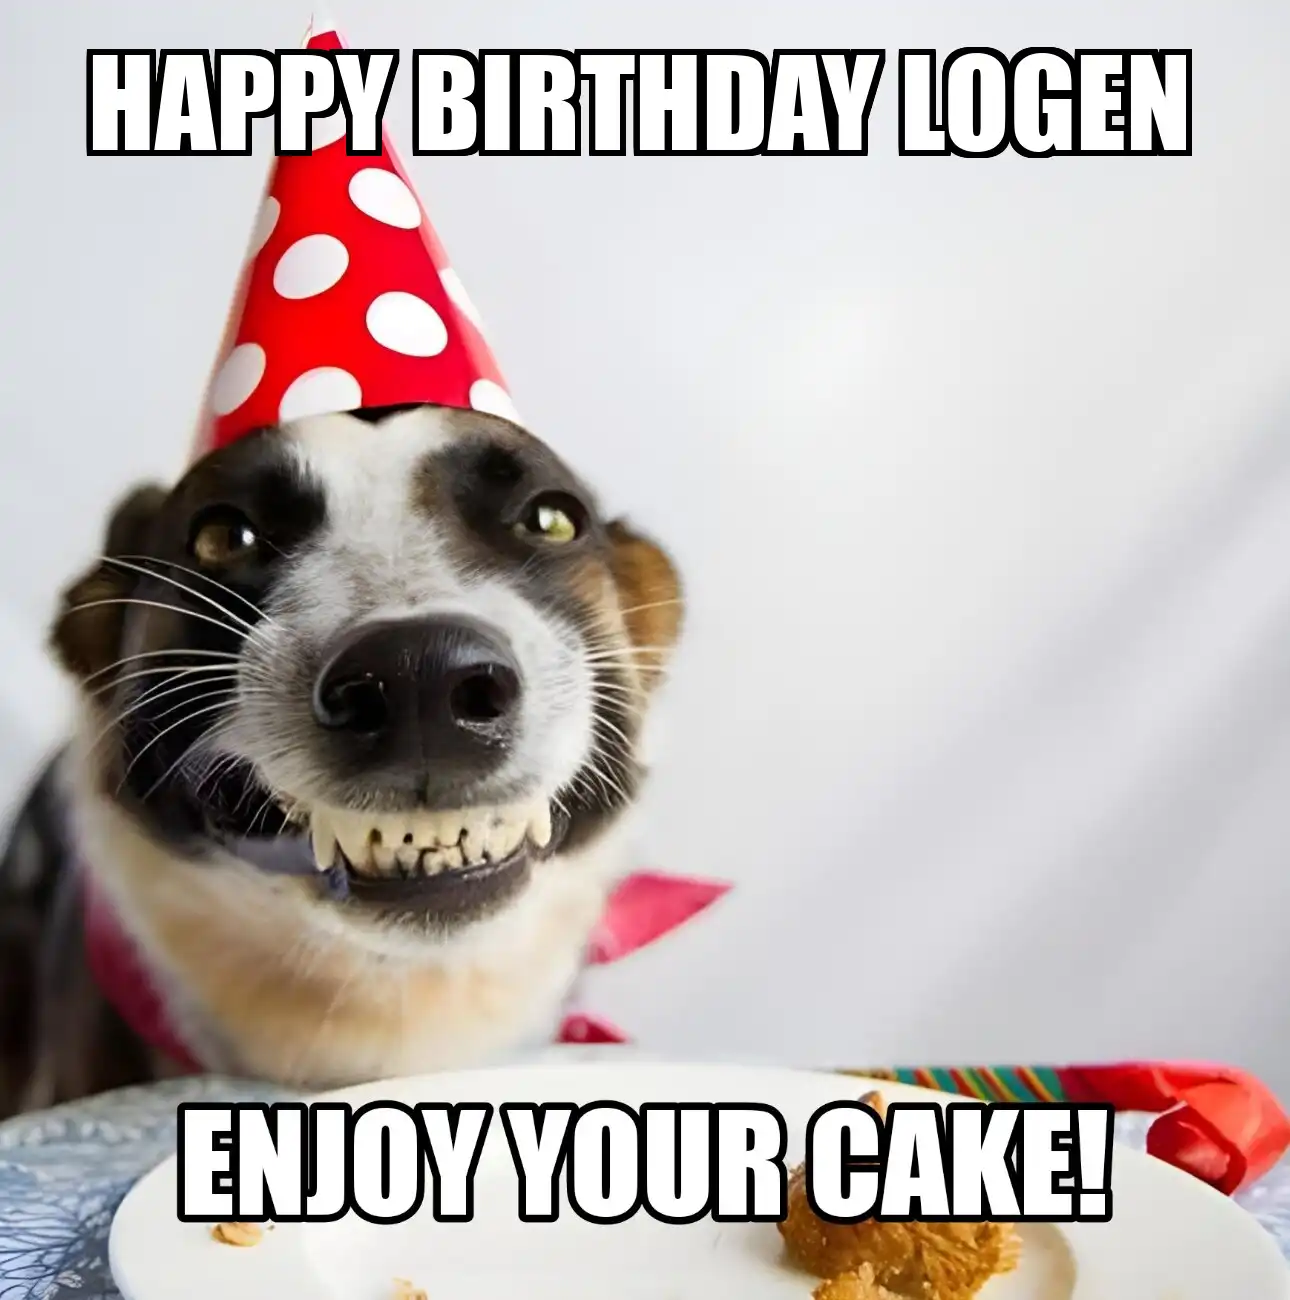 Happy Birthday Logen Enjoy Your Cake Dog Meme